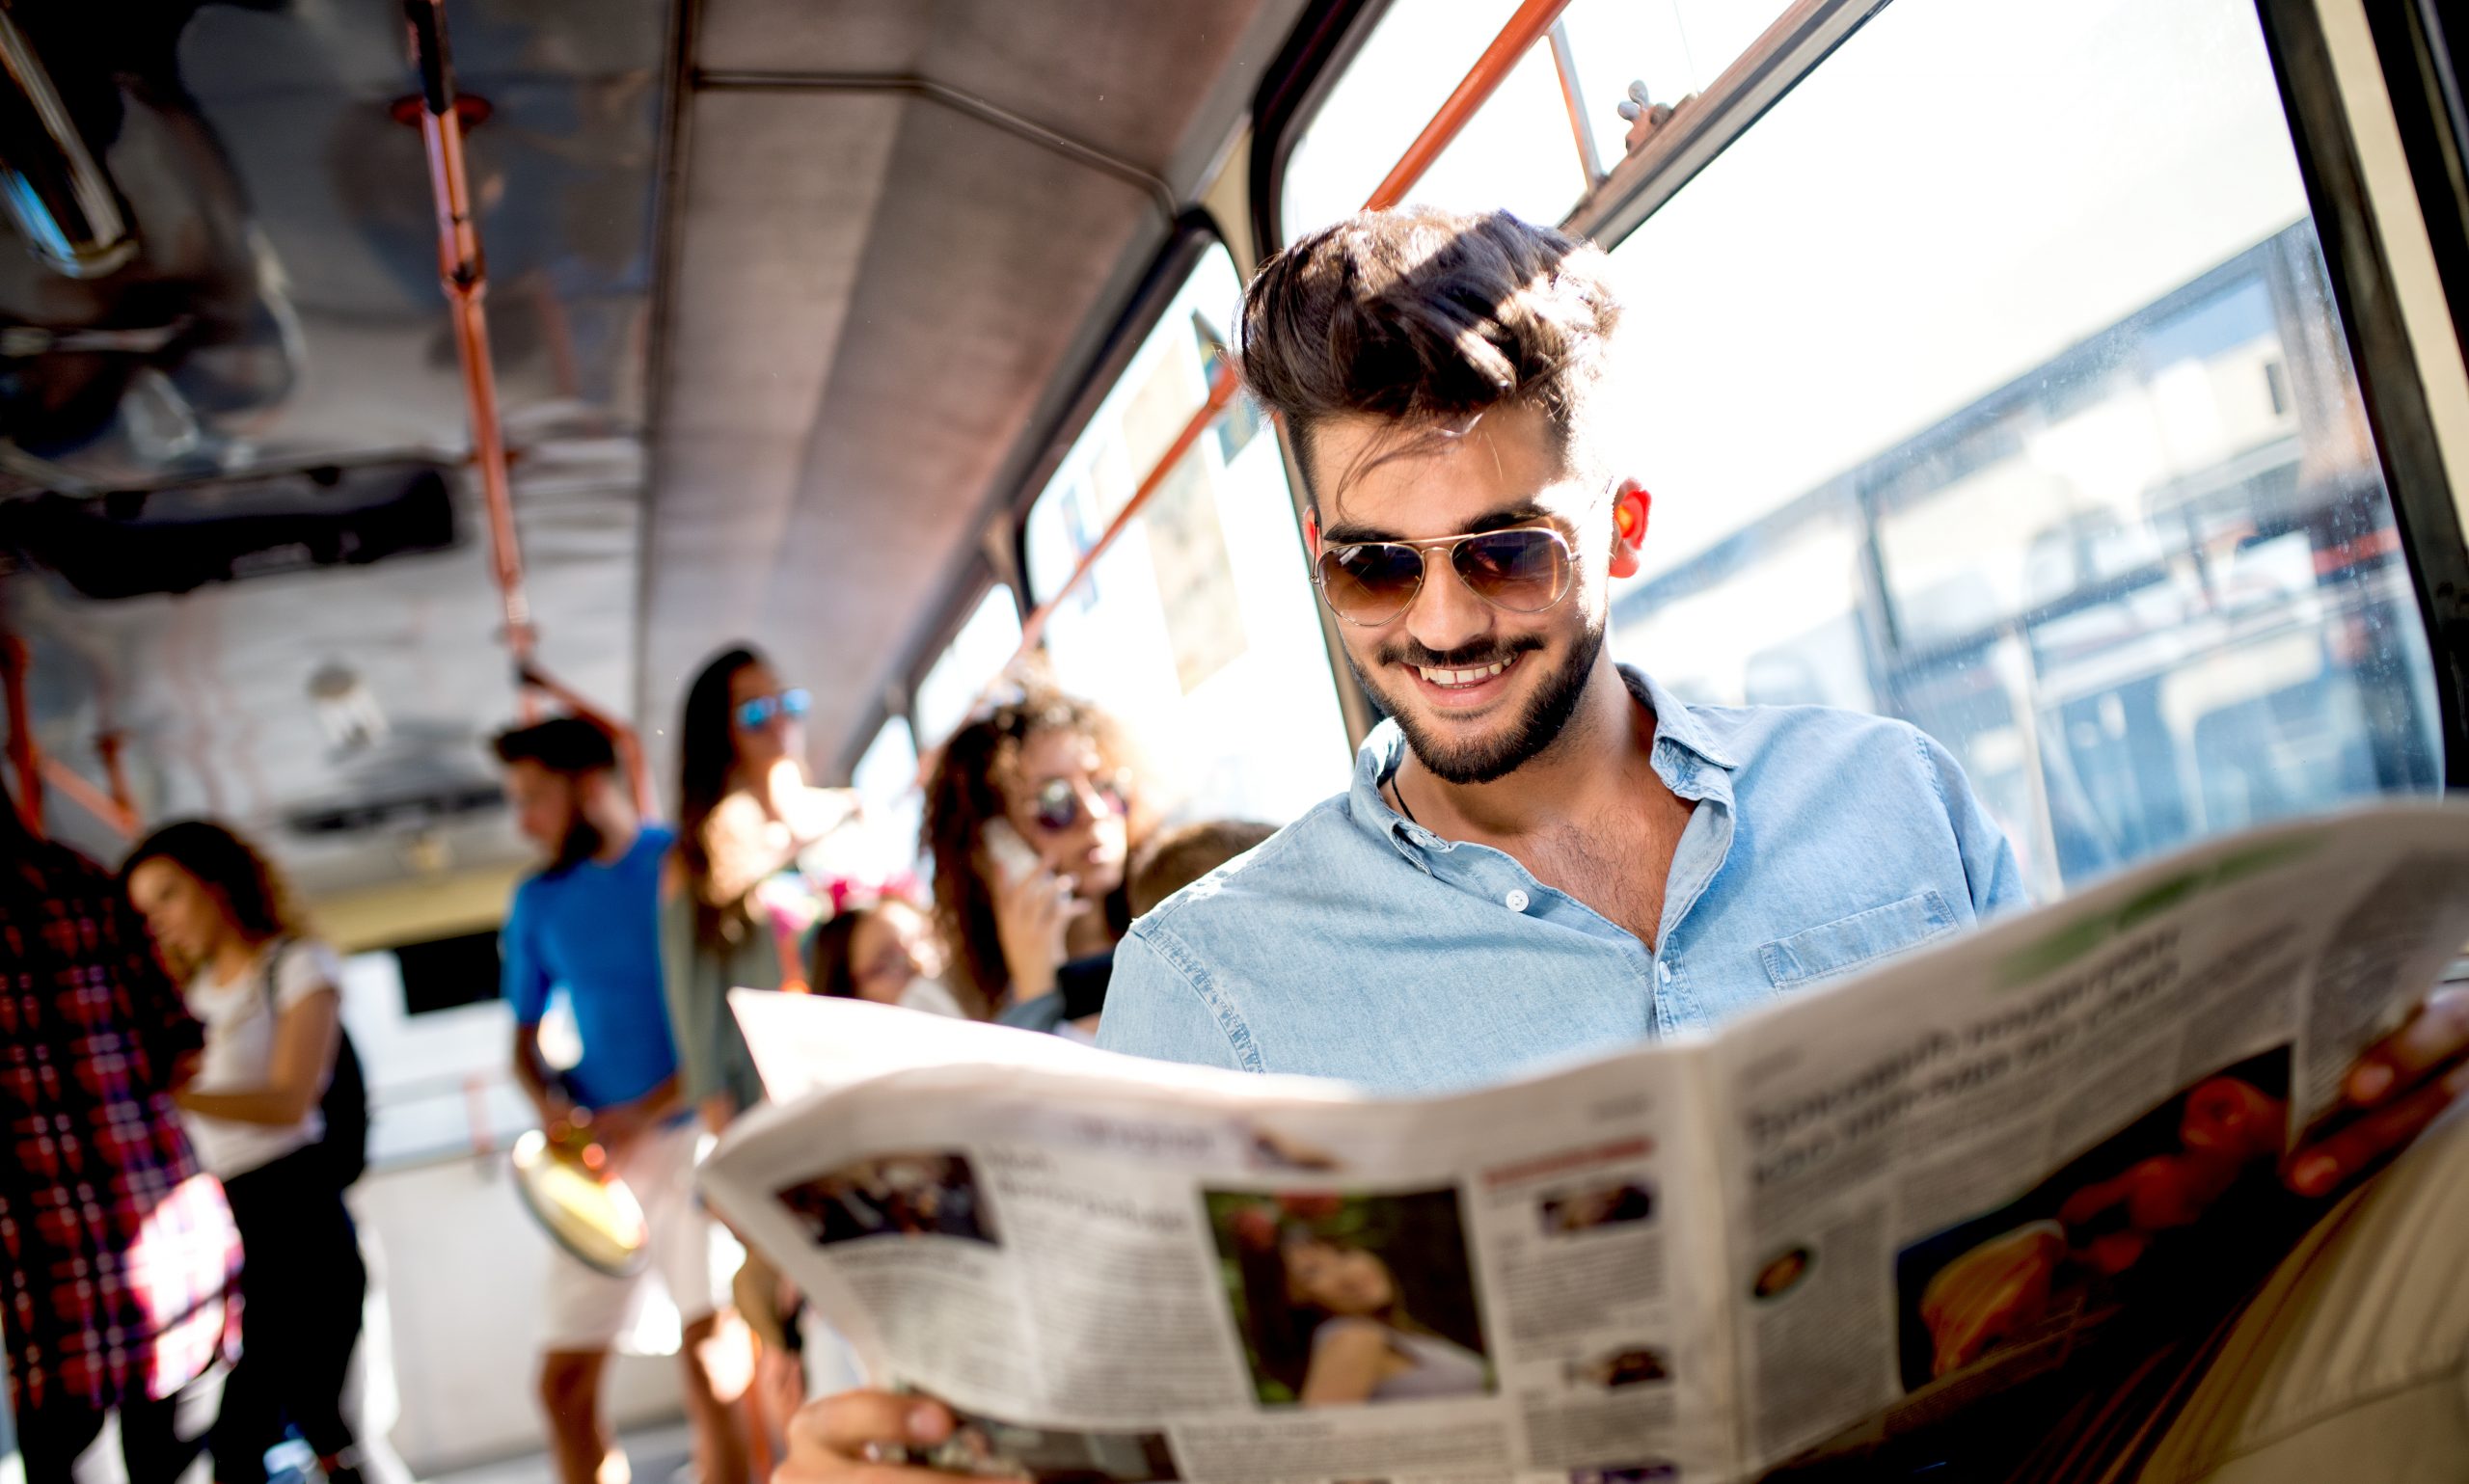 Newspaper man. Человек с газетой. Парень с газетой. Человек читает газету. Фотосессия молодого человека с газетой.